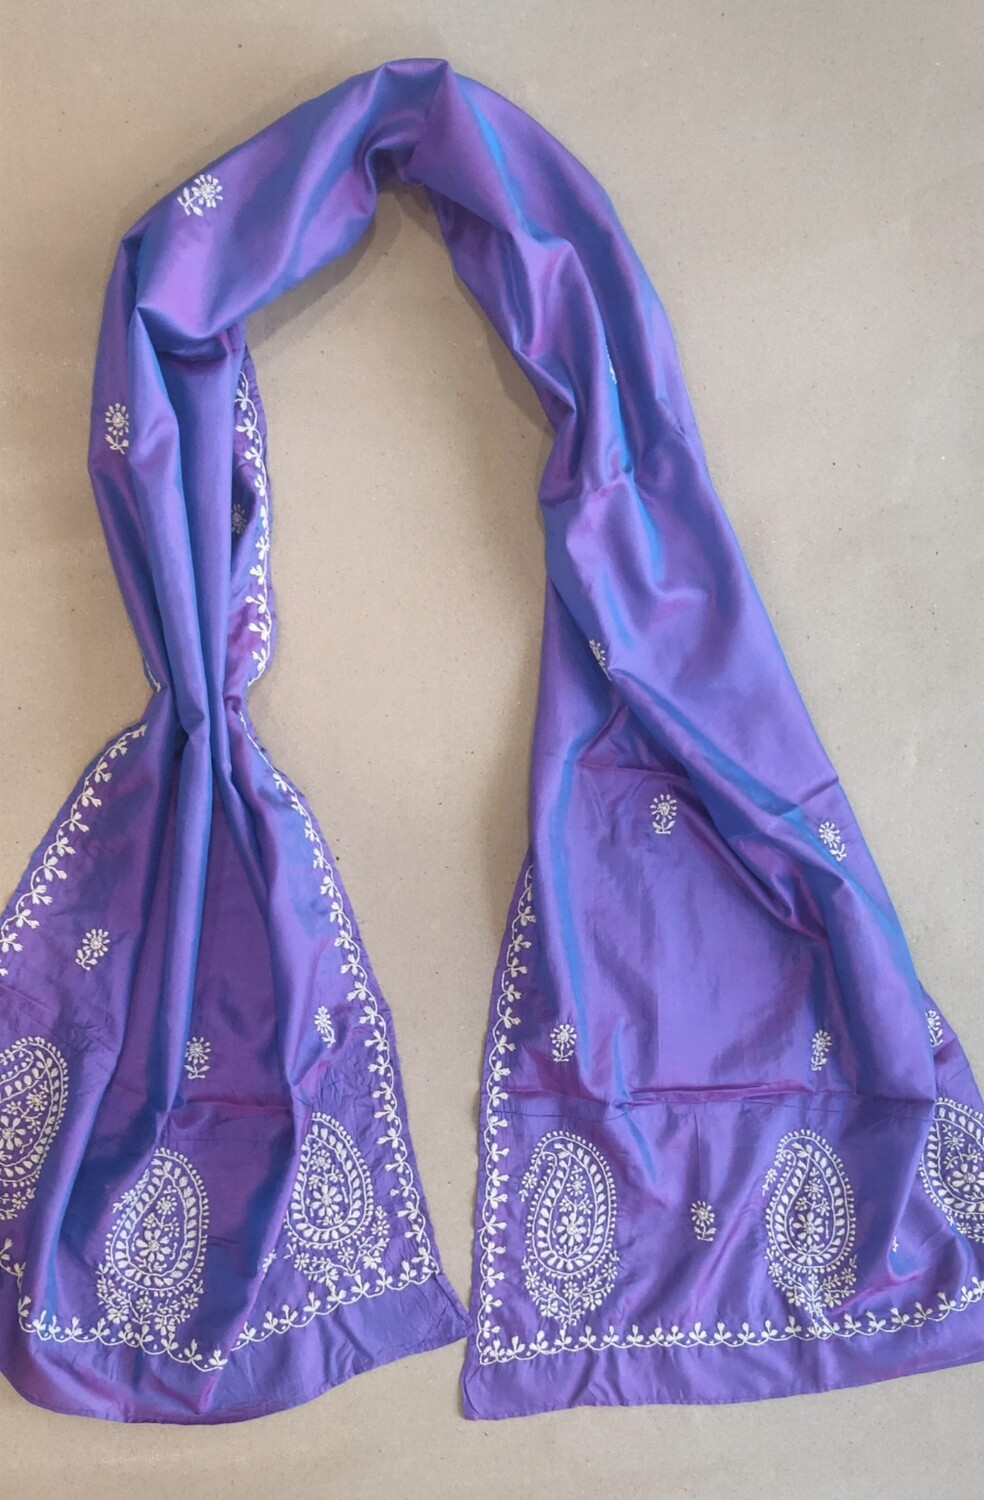 Silk purple stole with white work